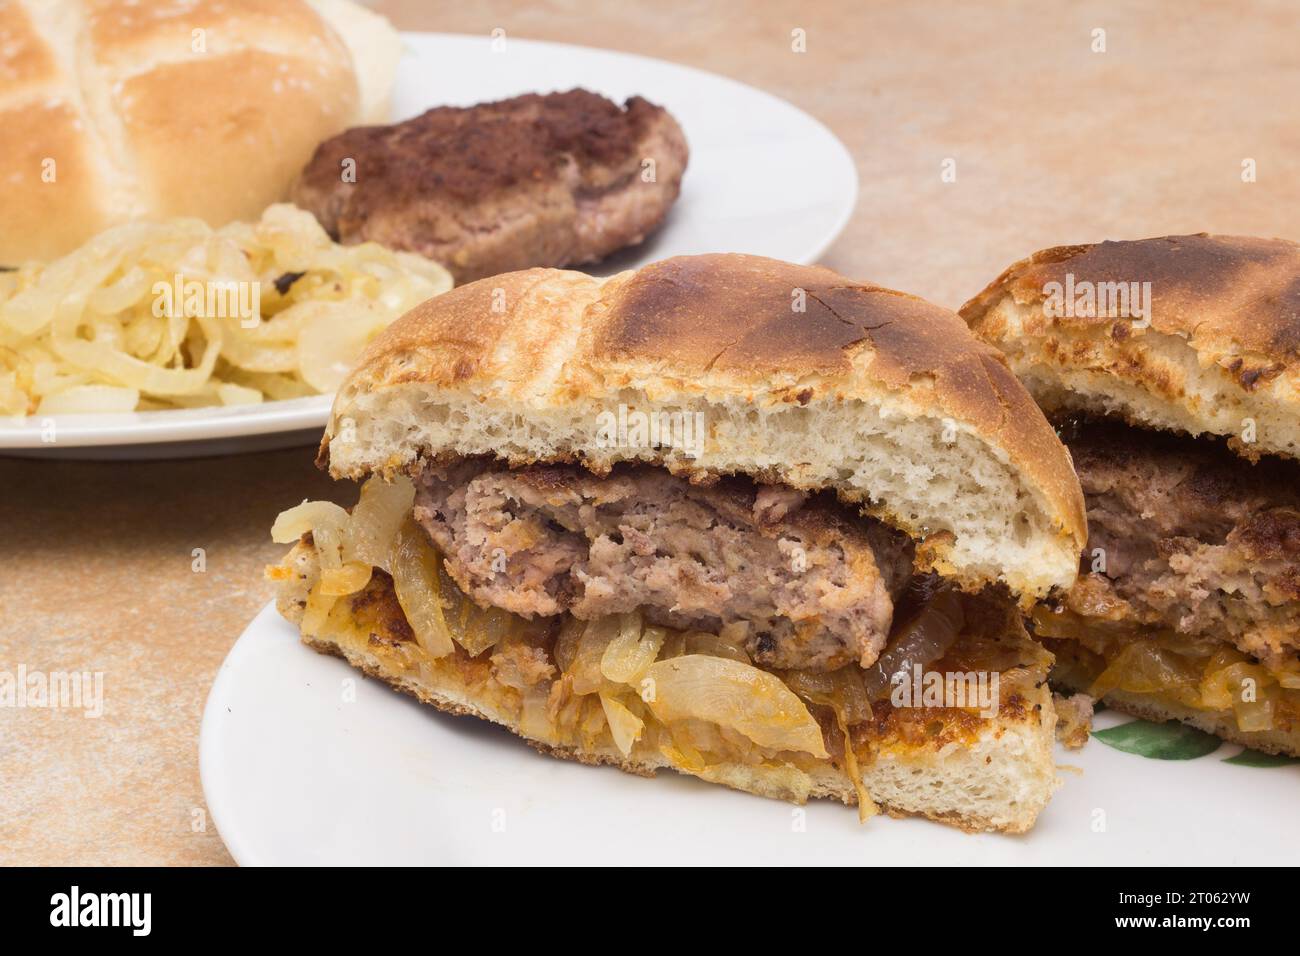 Eine Nahaufnahme eines hausgemachten Hamburger, der in zwei Hälften geschnitten ist und auf frisch gekochten Zwiebeln zwischen gerösteten Burgerbrötchen liegt. Im Hintergrund ist da Stockfoto